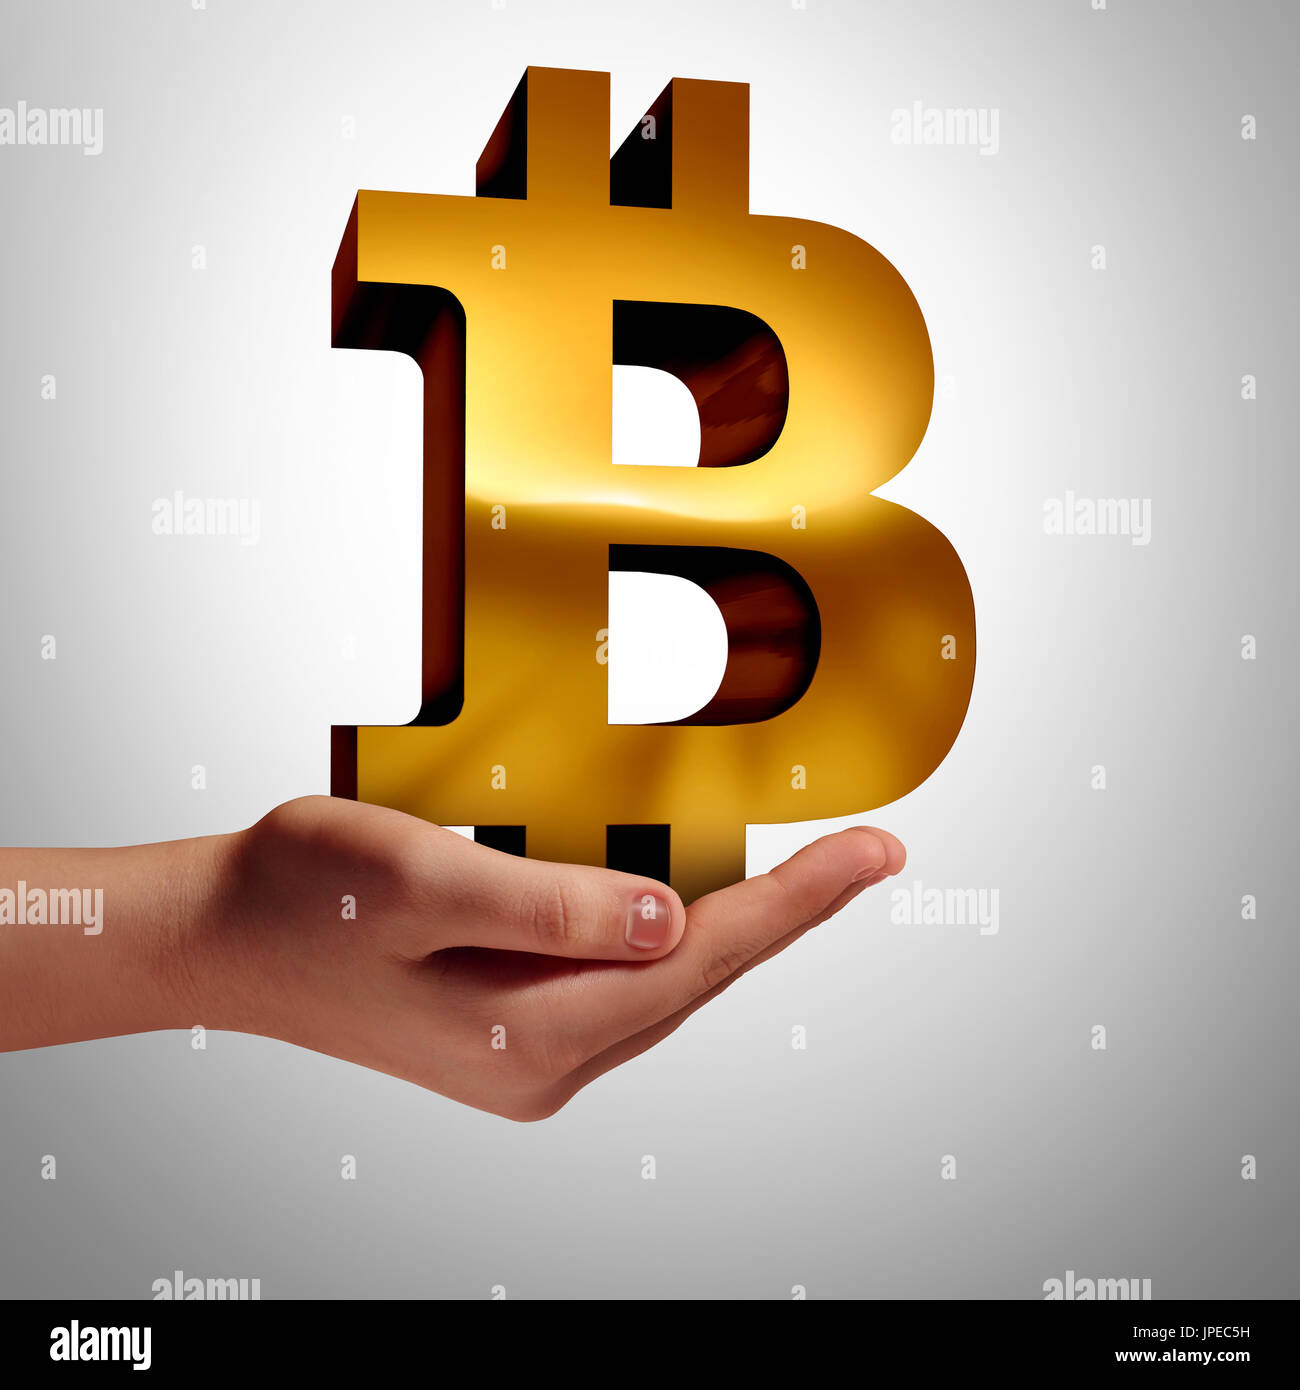 Moneta Bitcoin e simbolo di cryptocurrency digitale valuta internet concetto economico come una mano umana azienda online il denaro elettronico. Foto Stock